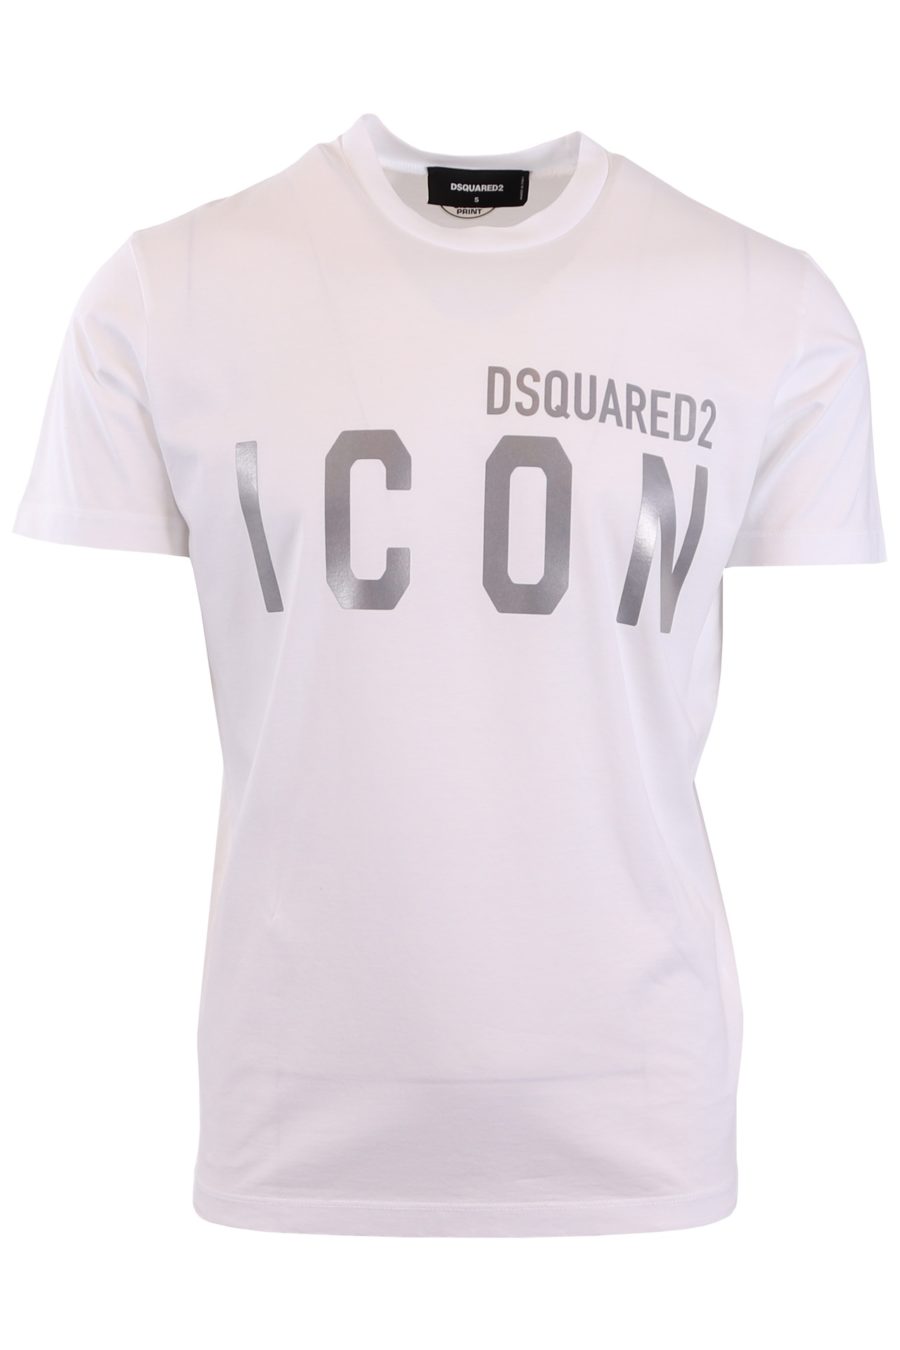 Camiseta Dsquared2 blanca con "Icon" reflectivo - 627809236b8305bd8d74f3f0baf20e860ff4bedf